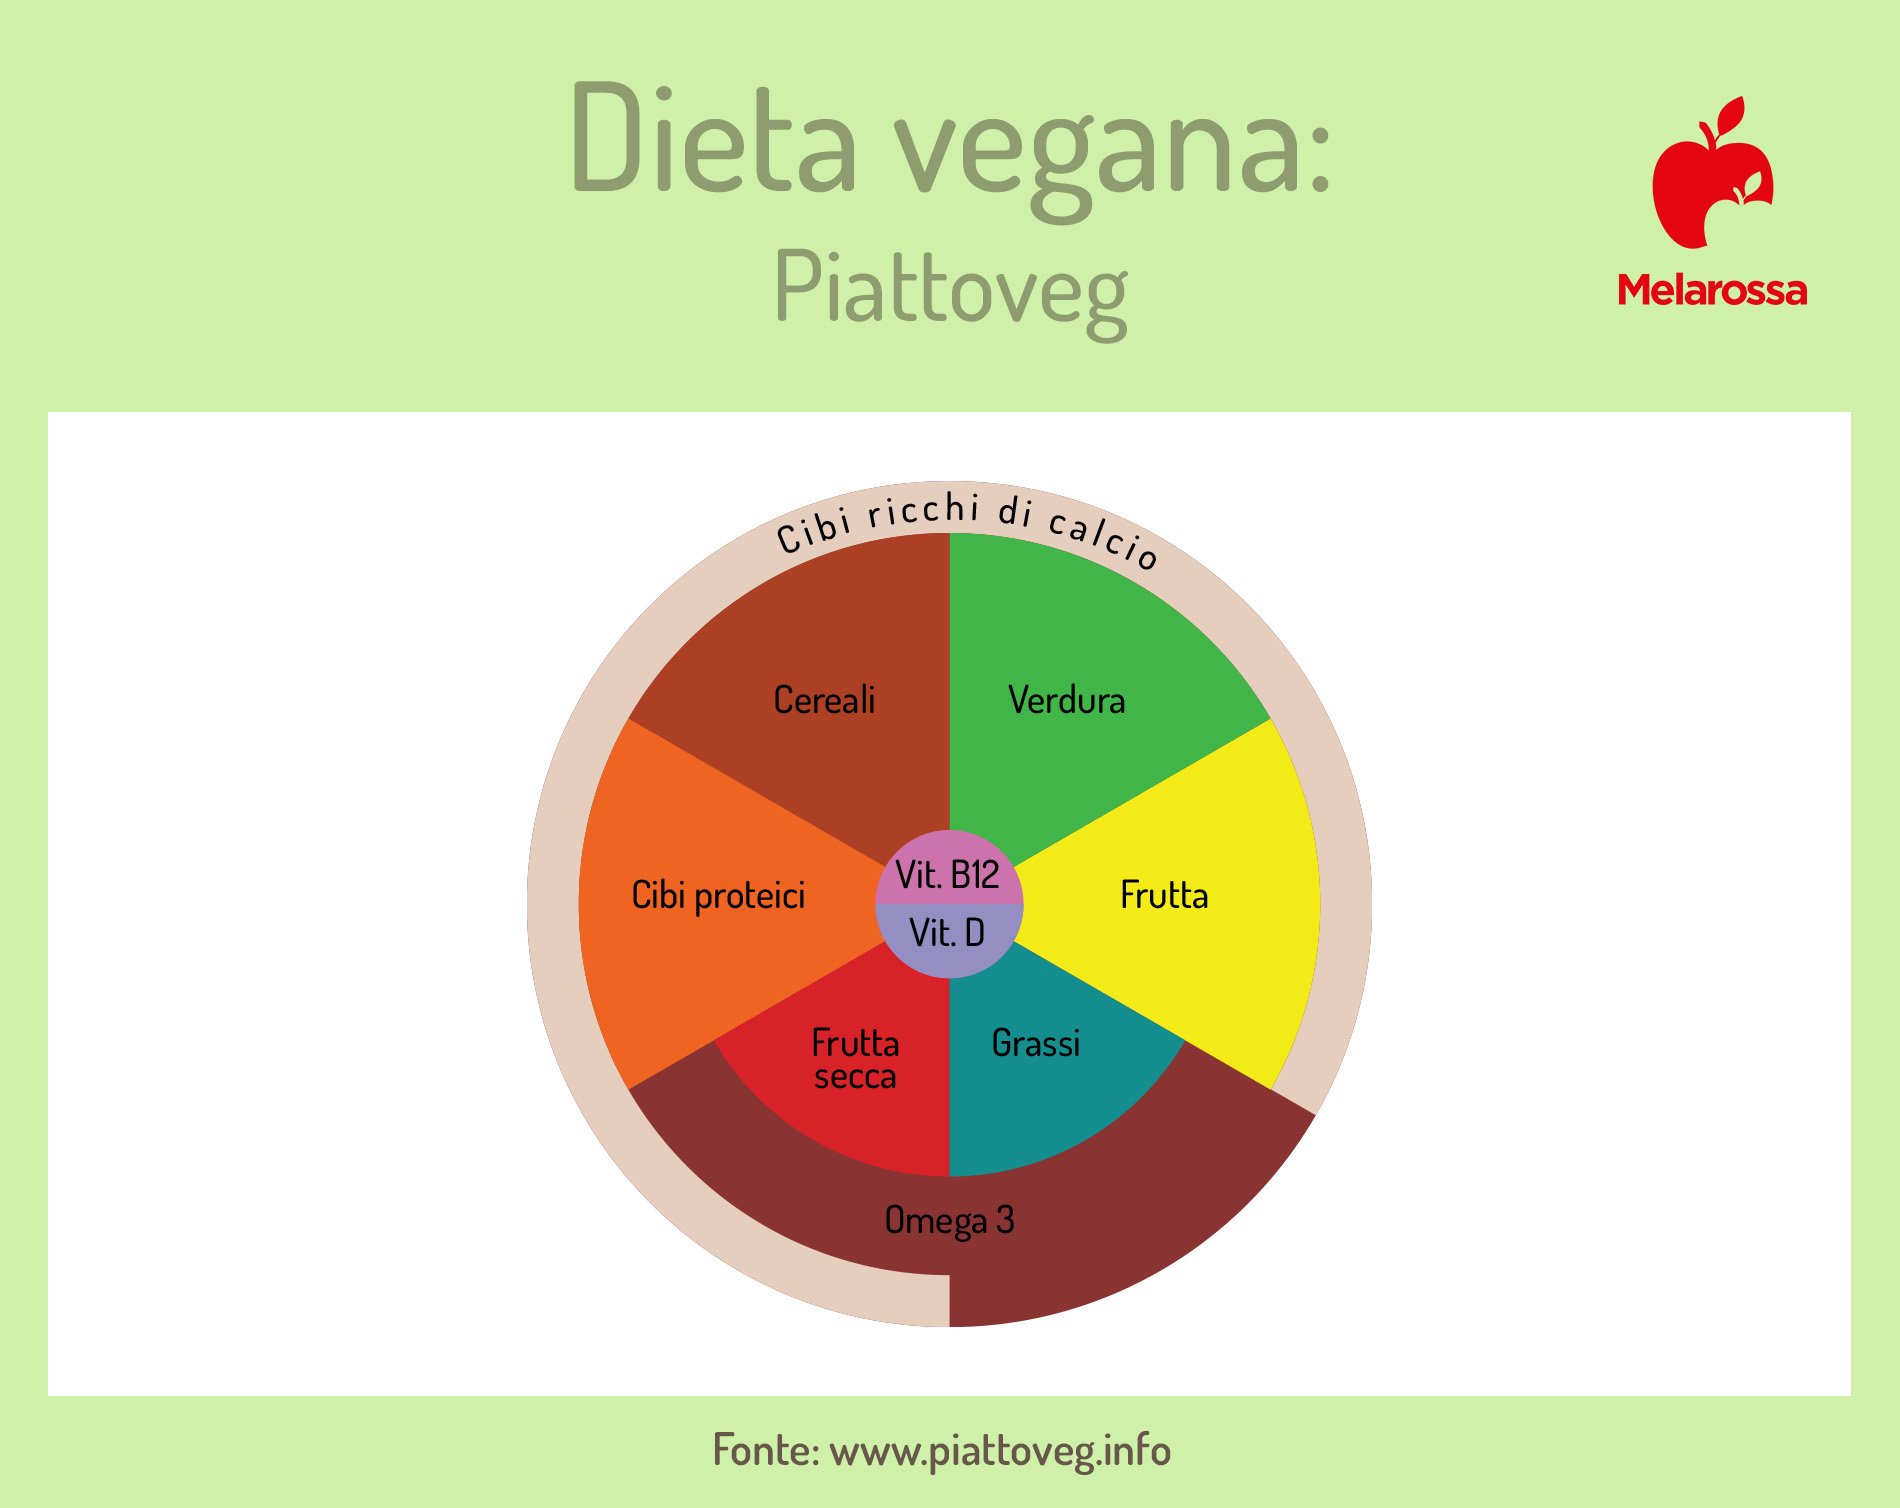 dieta vegana: piattoveg